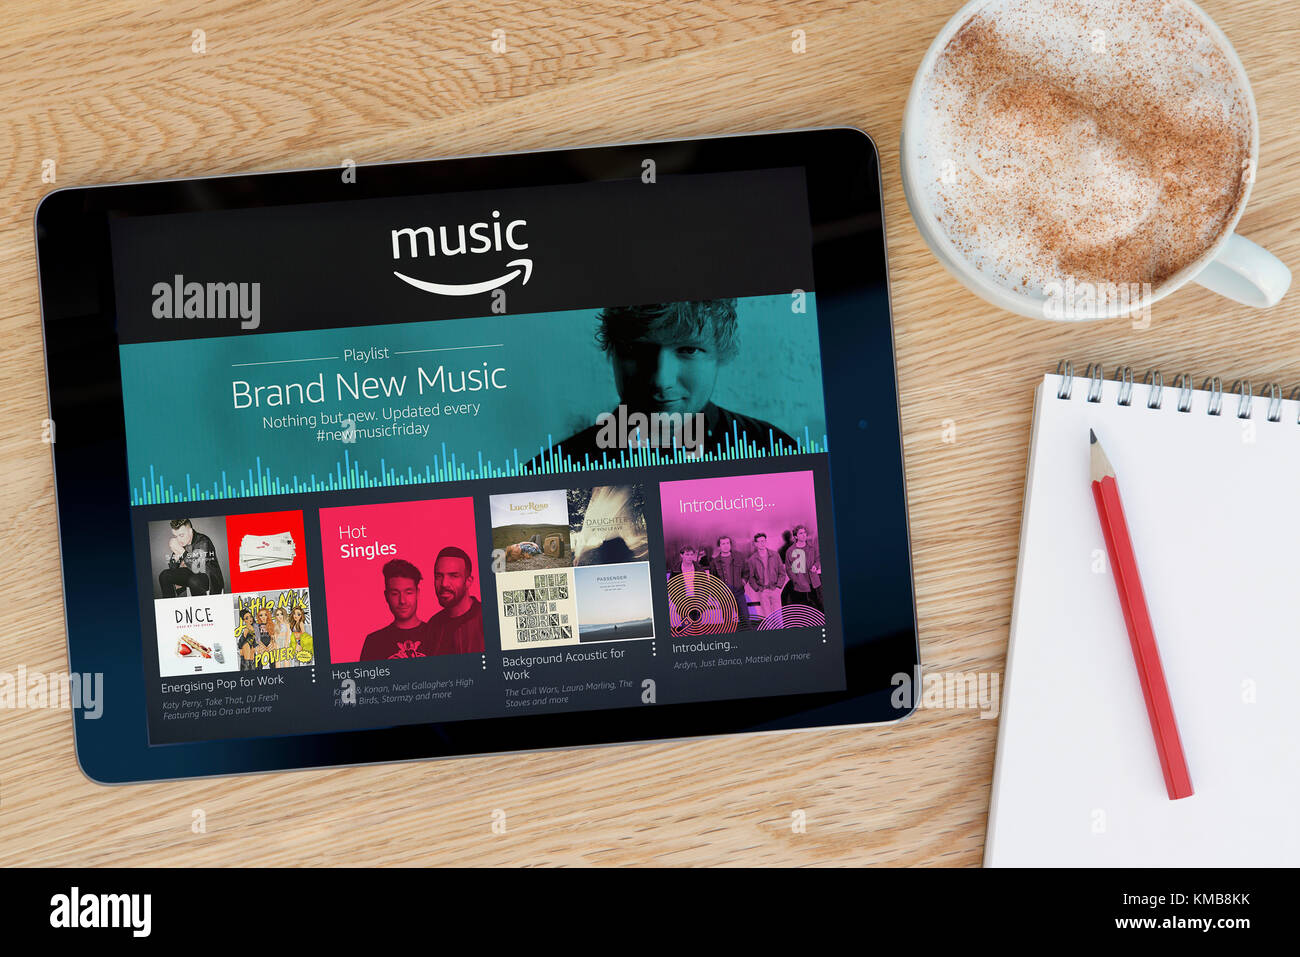 L'Amazon app Musique dispose sur un iPad tablet device qui repose sur une table en bois à côté d'un bloc-notes et un crayon et une tasse de café (rédaction uniquement). Banque D'Images